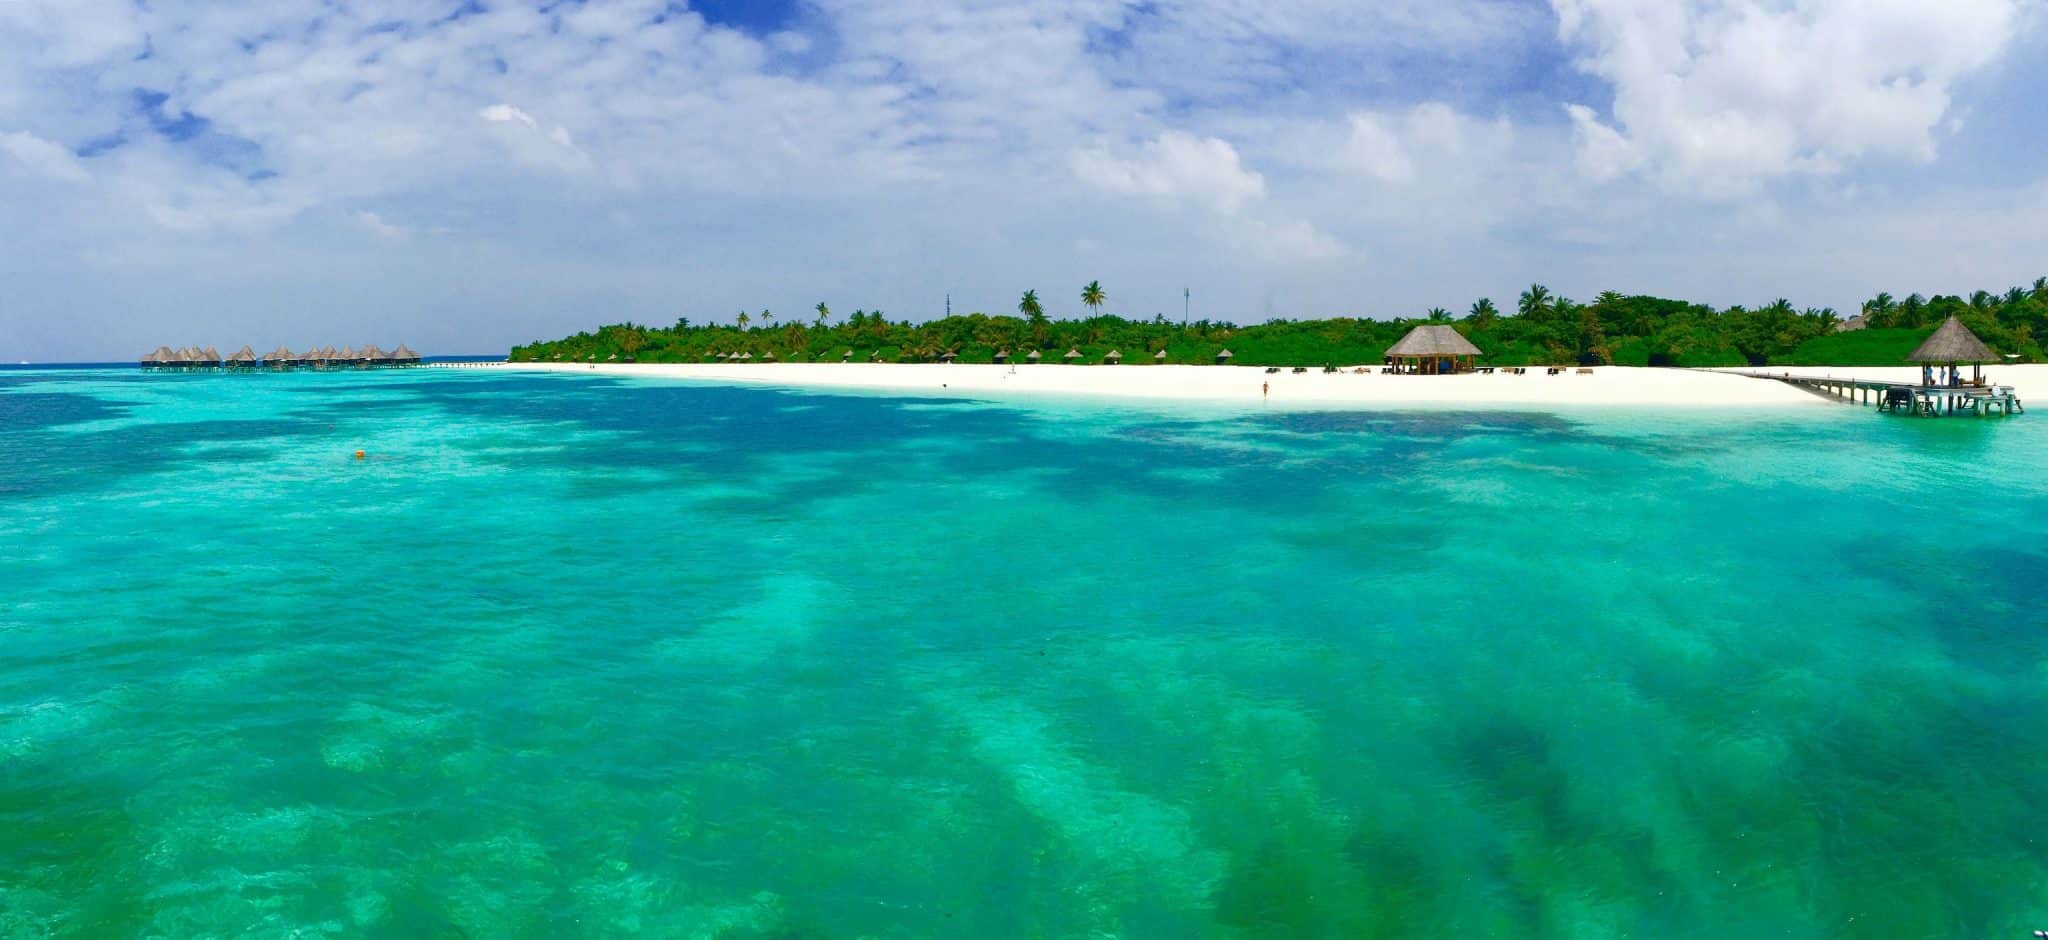 Resortinsel auf den Malediven – die Hotels und Resorts im Inselstaat gehören zu den schönsten auf der ganzen Welt.